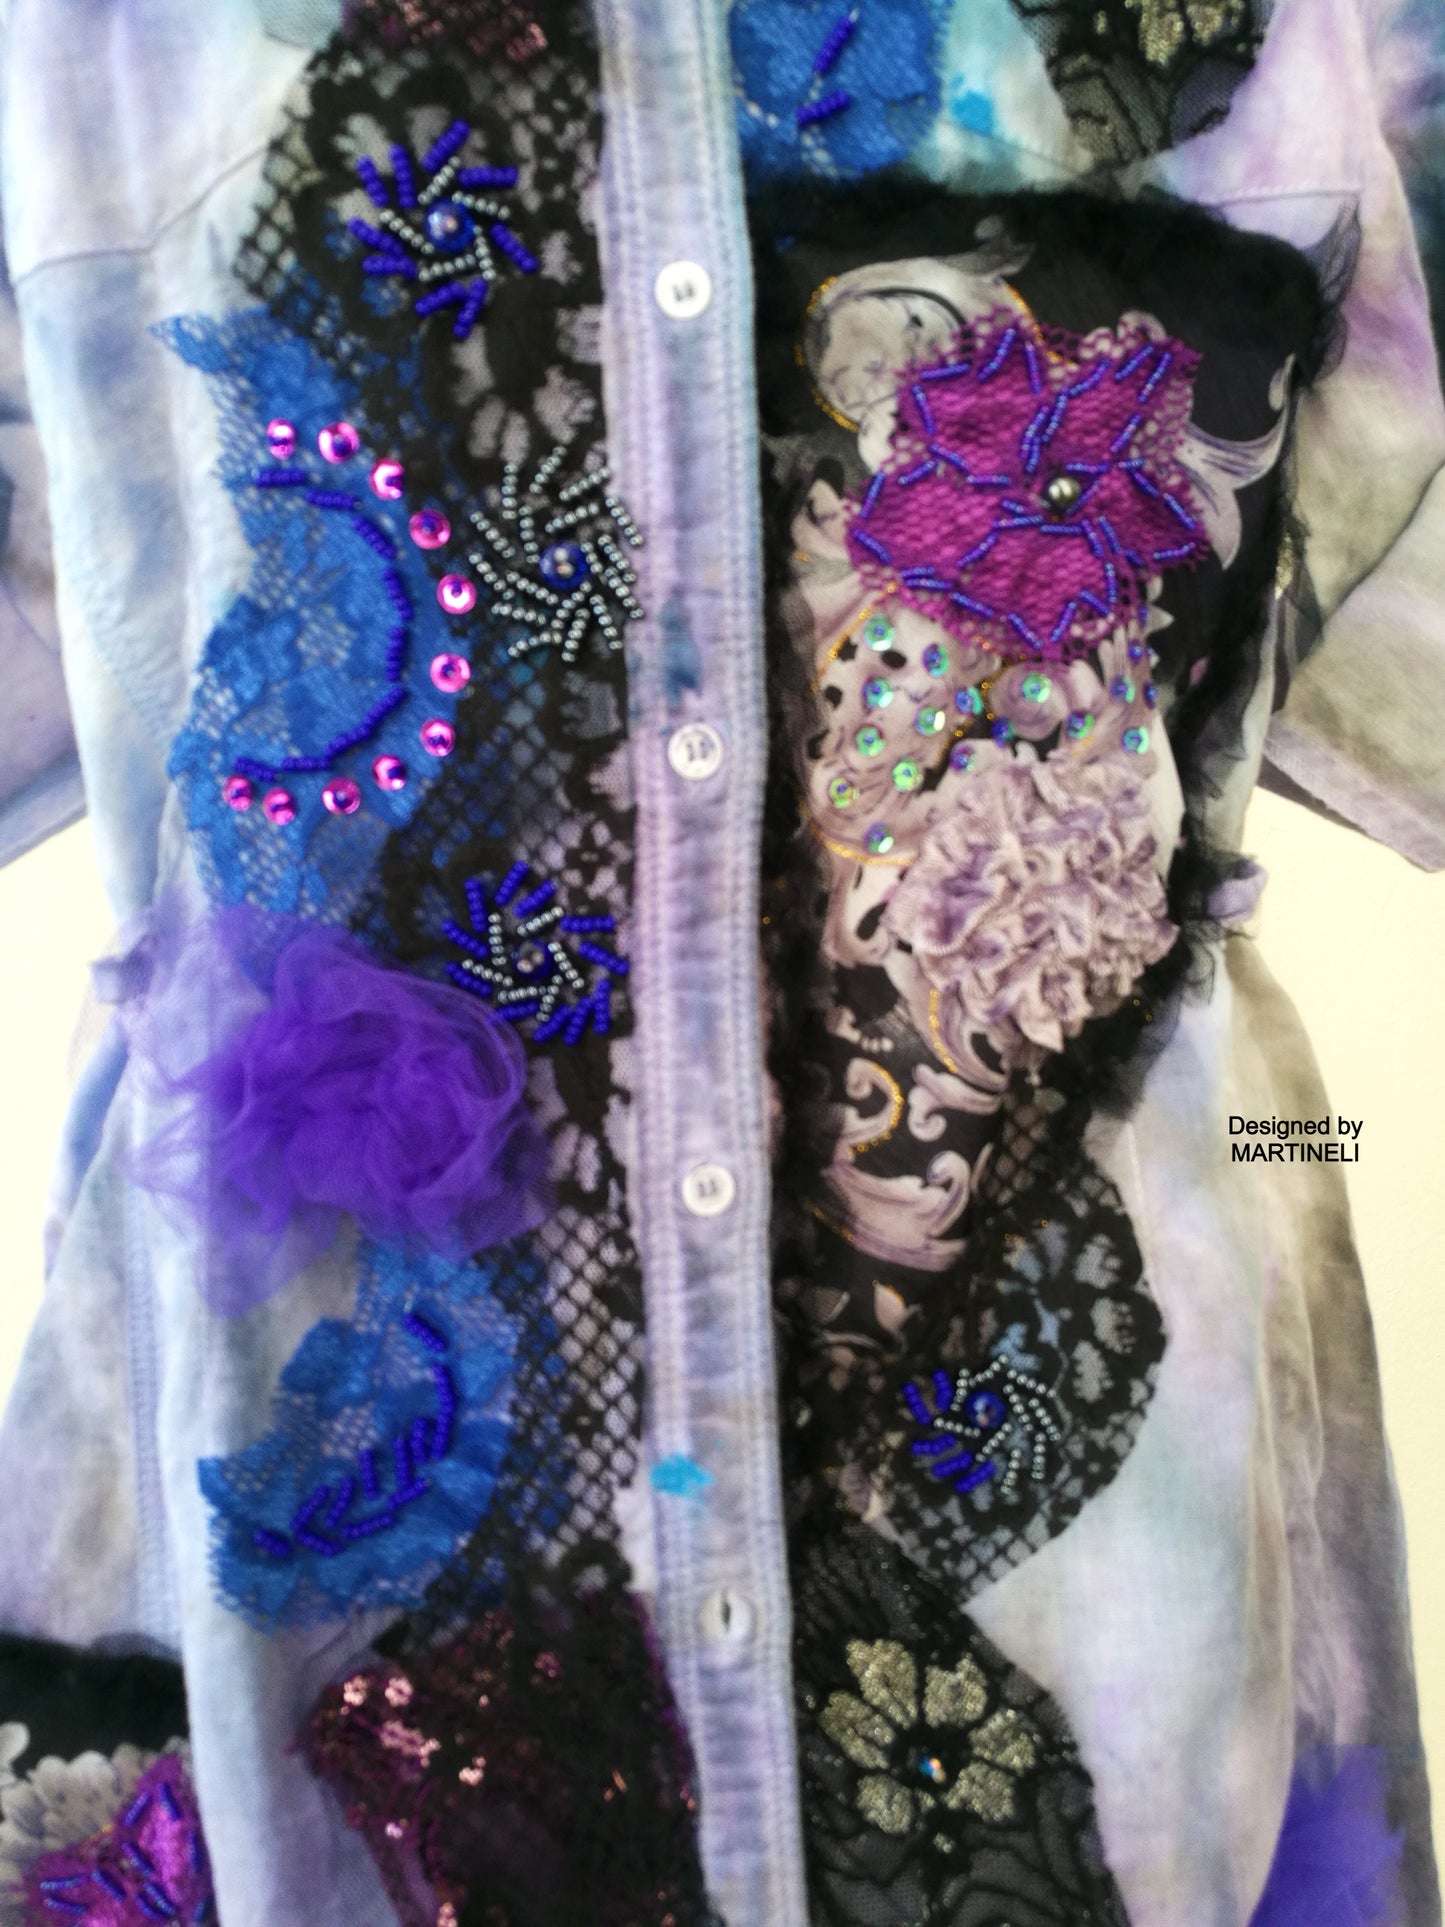 Linen Shirt Dress,M/L Tie Dye Embroidered Summer Dress